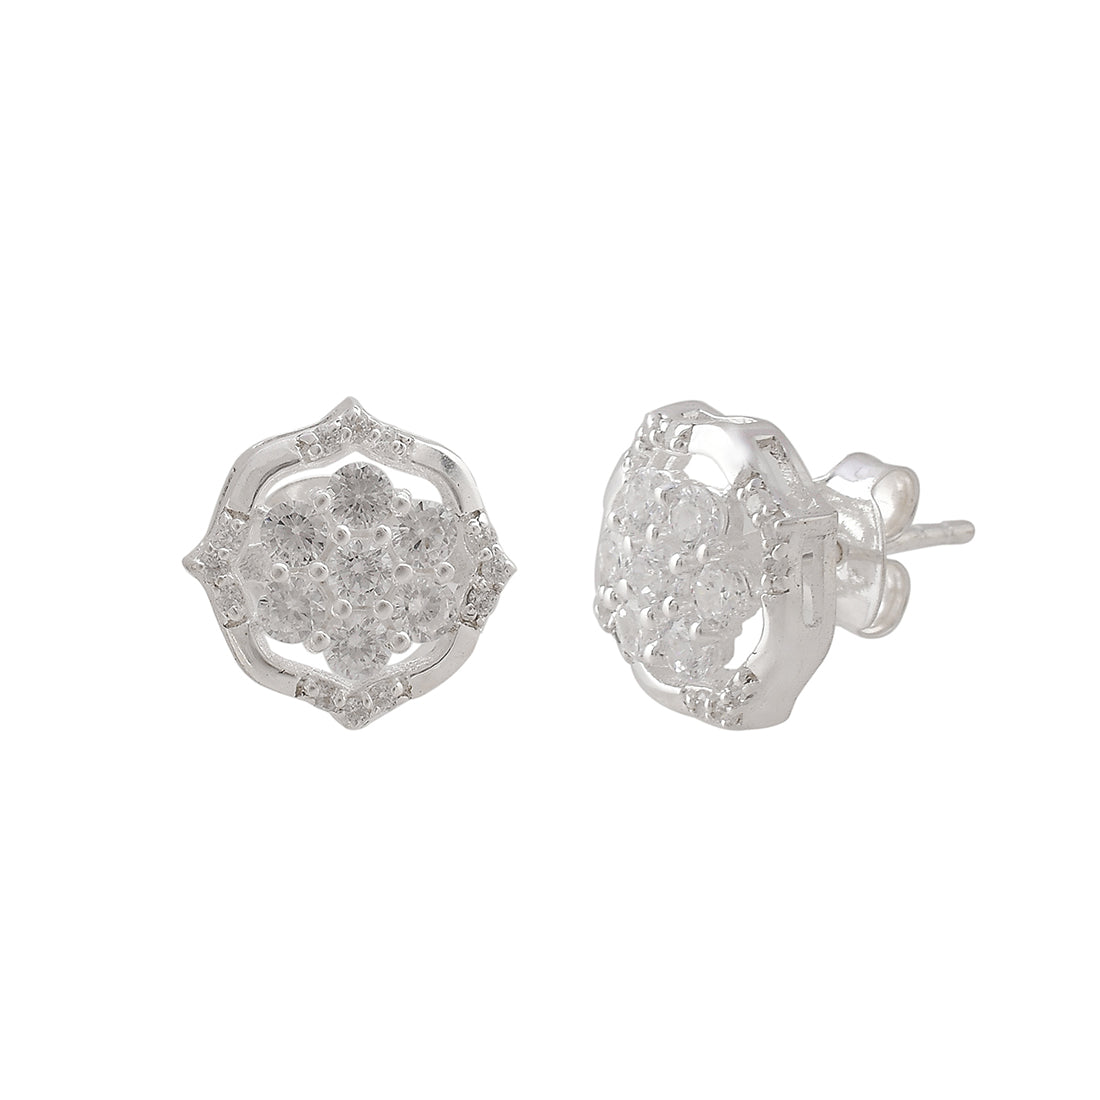 Women's 925 Sterling Silver Shiny Cubic Zironia Earrings - Voylla